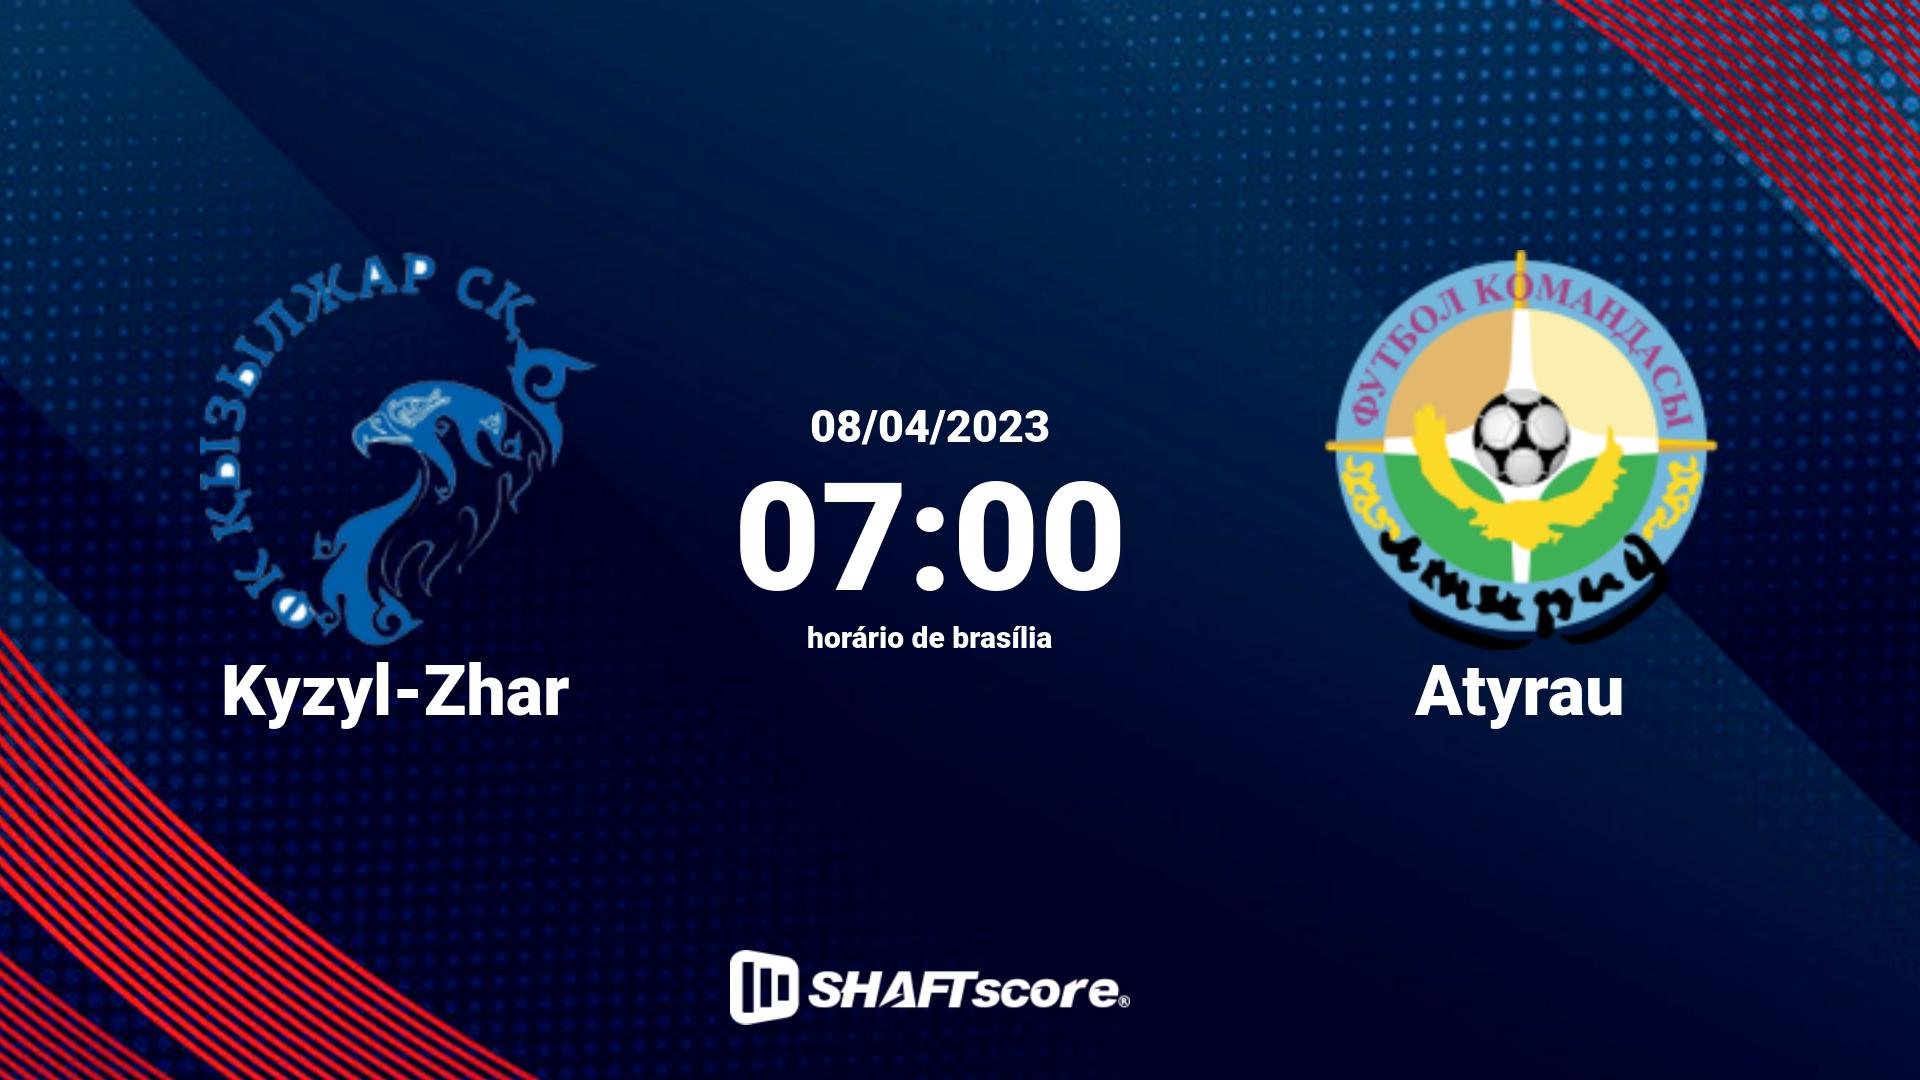 Estatísticas do jogo Kyzyl-Zhar vs Atyrau 08.04 07:00